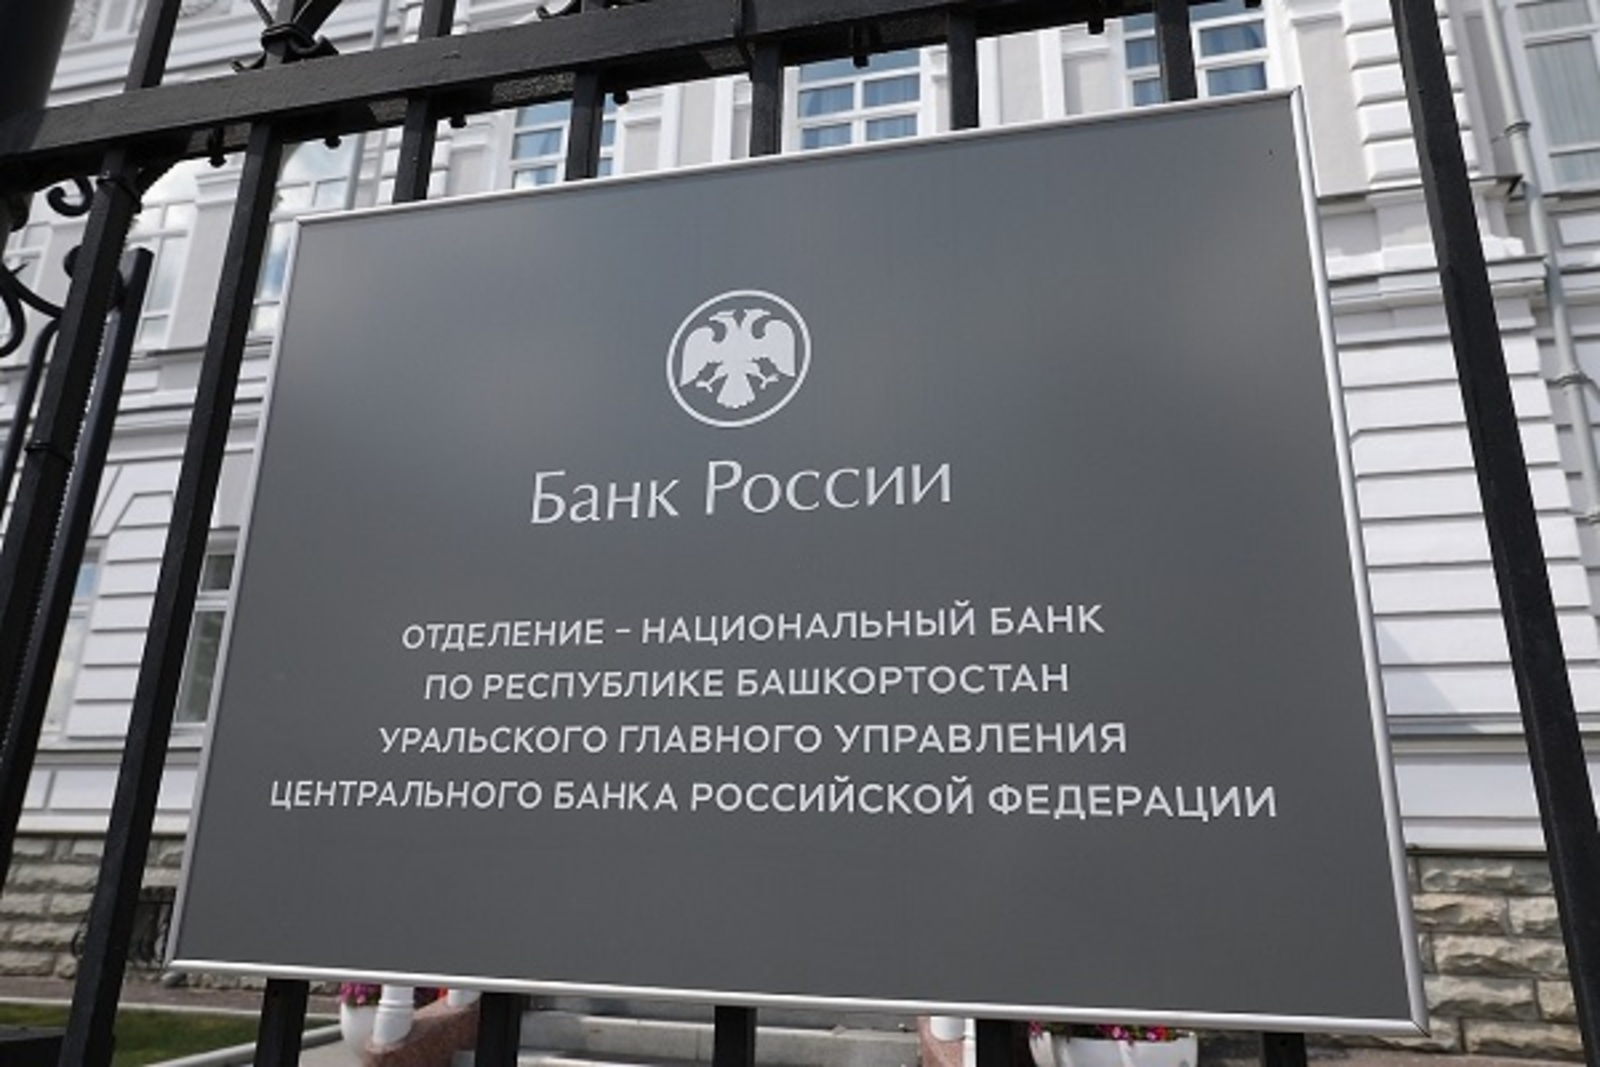 Нацбанк Башкирии: Банки начали делить бизнес по принципу светофора